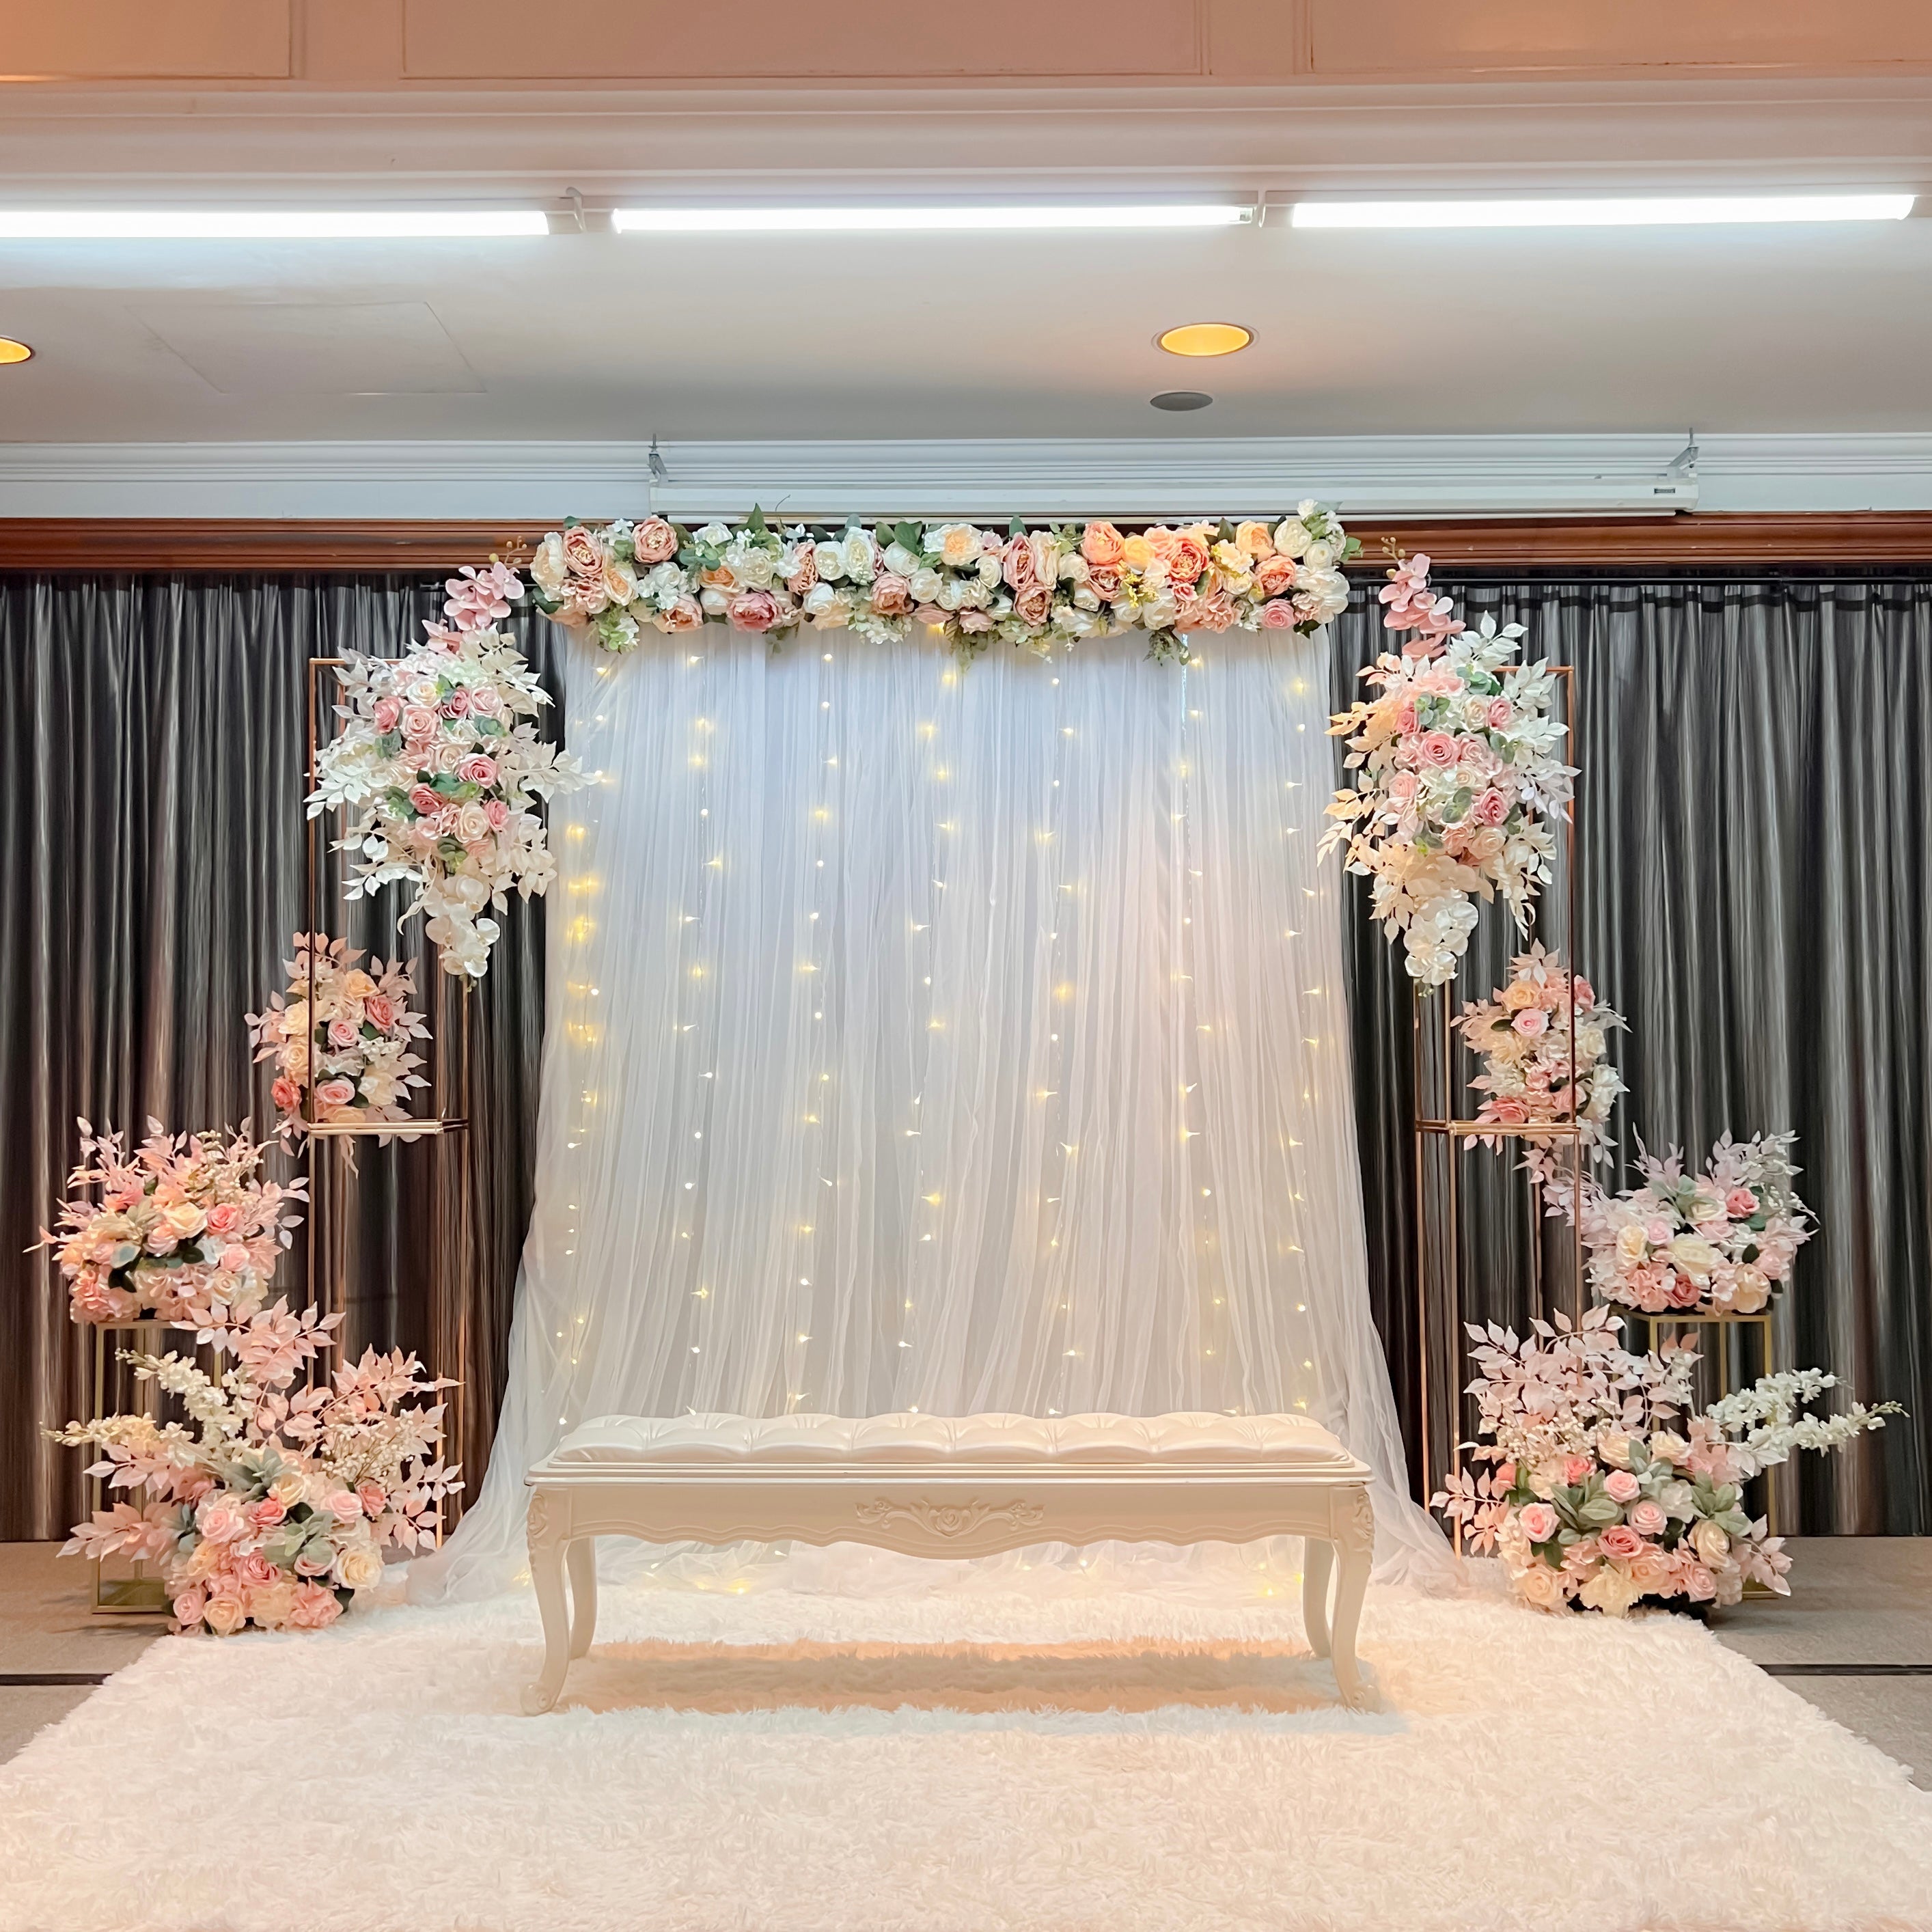 Mini Pelamin/ Mini Dias Decor for Malay Wedding in Singapore - Pink & White Theme with Fairylights